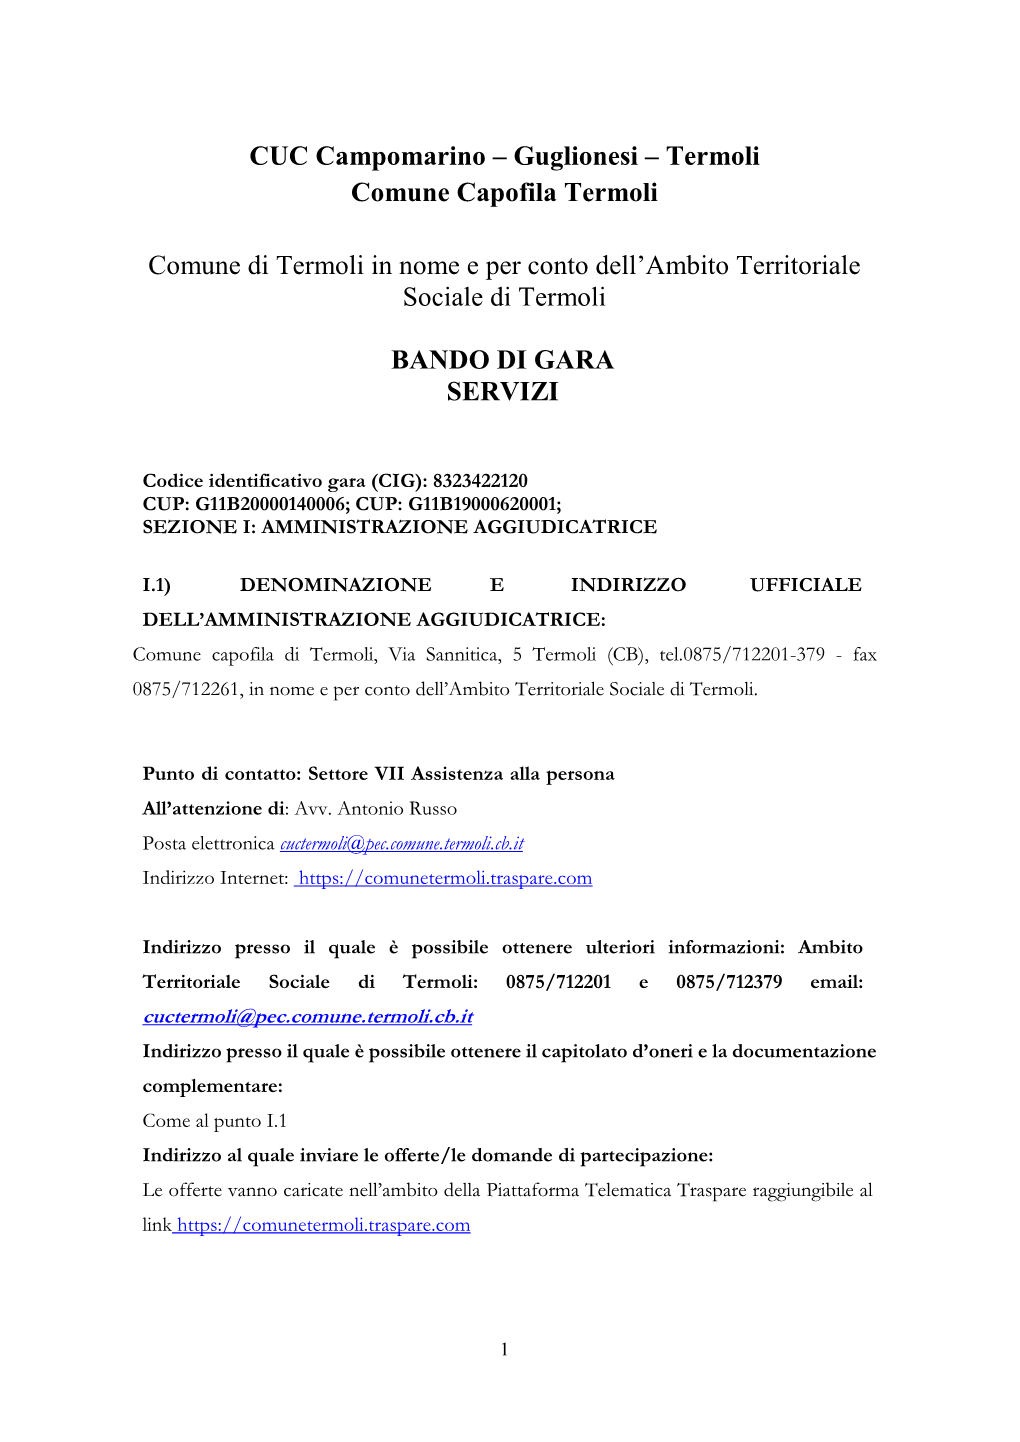 CUC Campomarino – Guglionesi – Termoli Comune Capofila Termoli